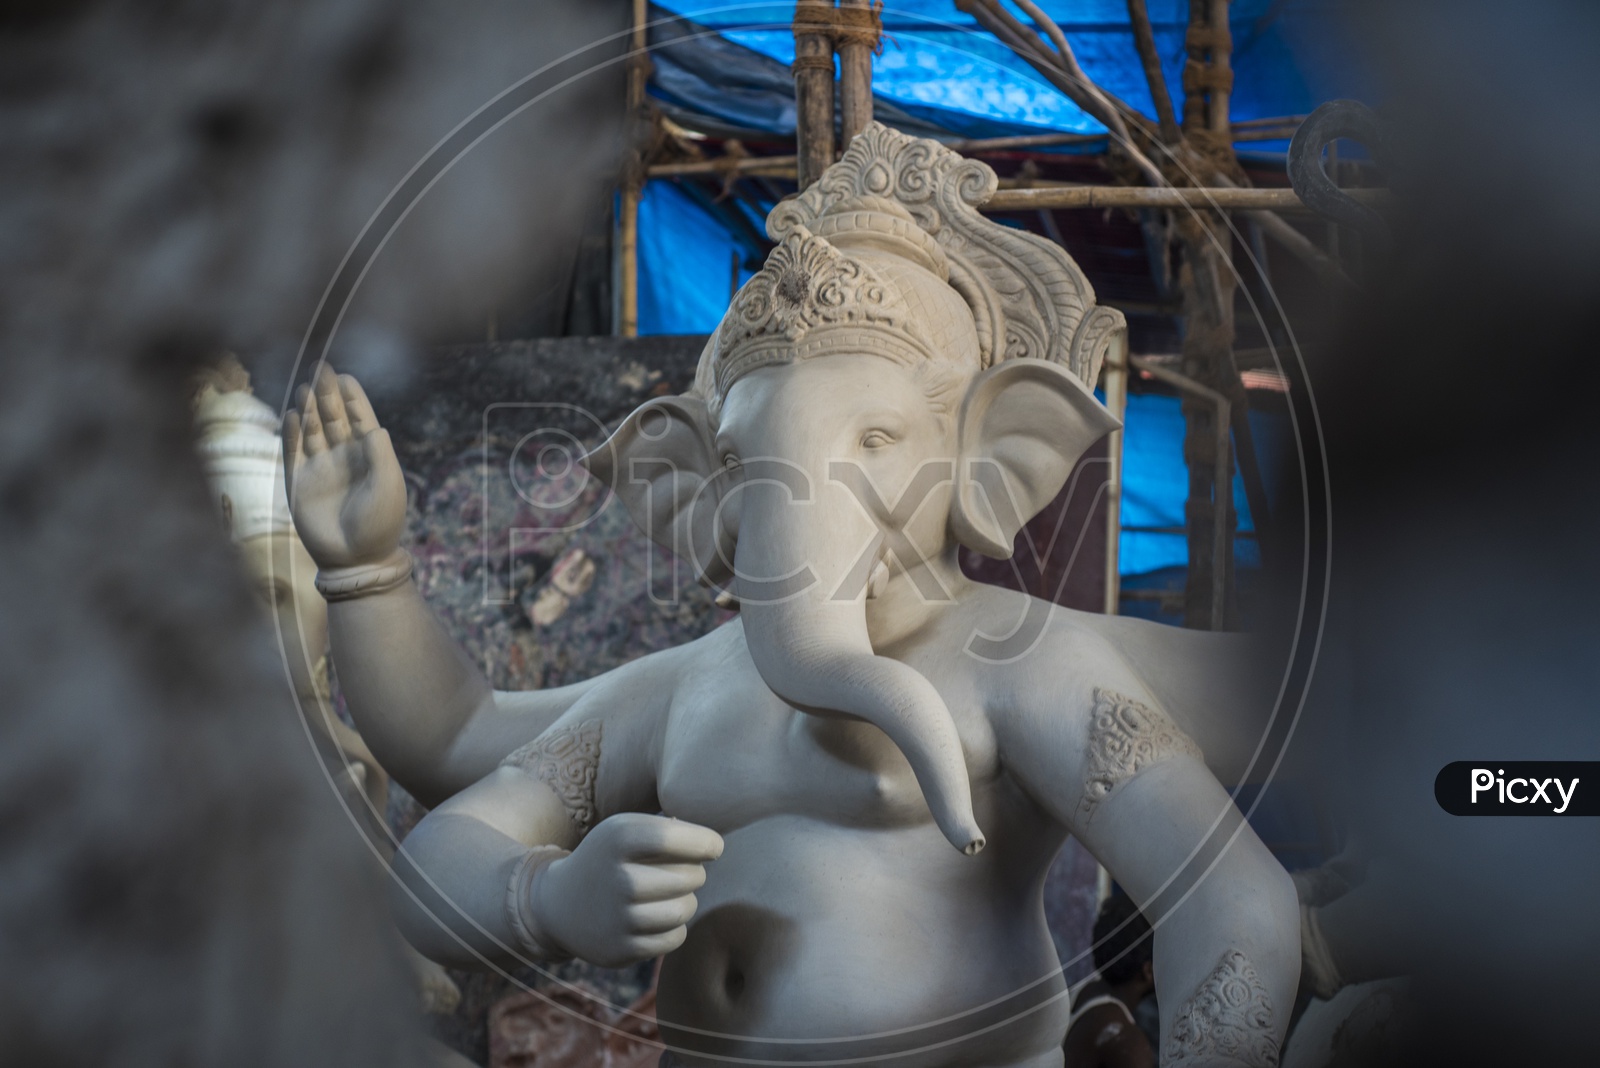 Ganesha idol in the making